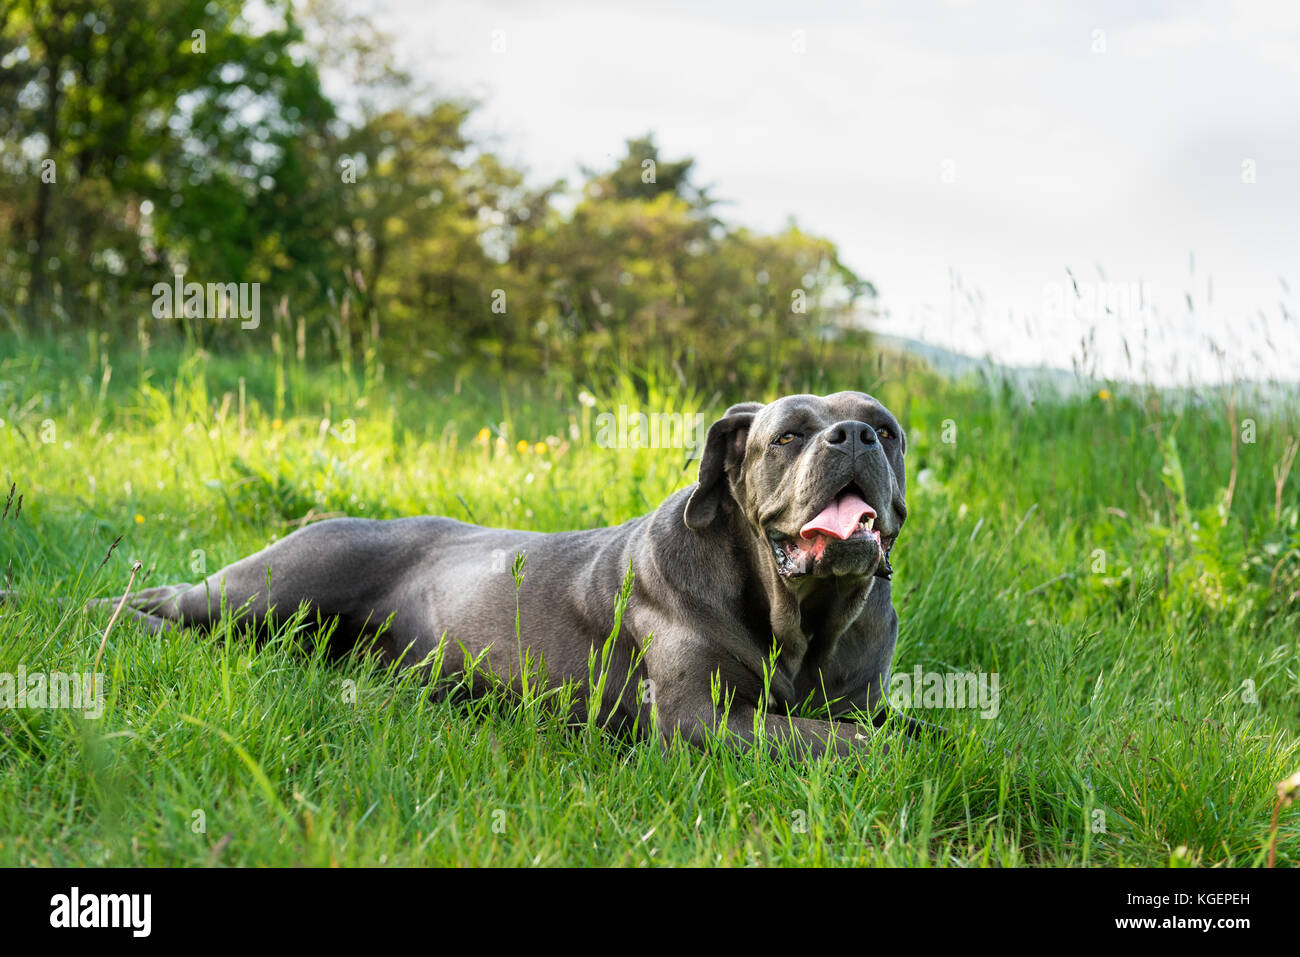 Cane corso, perro mastín italiano Foto de stock